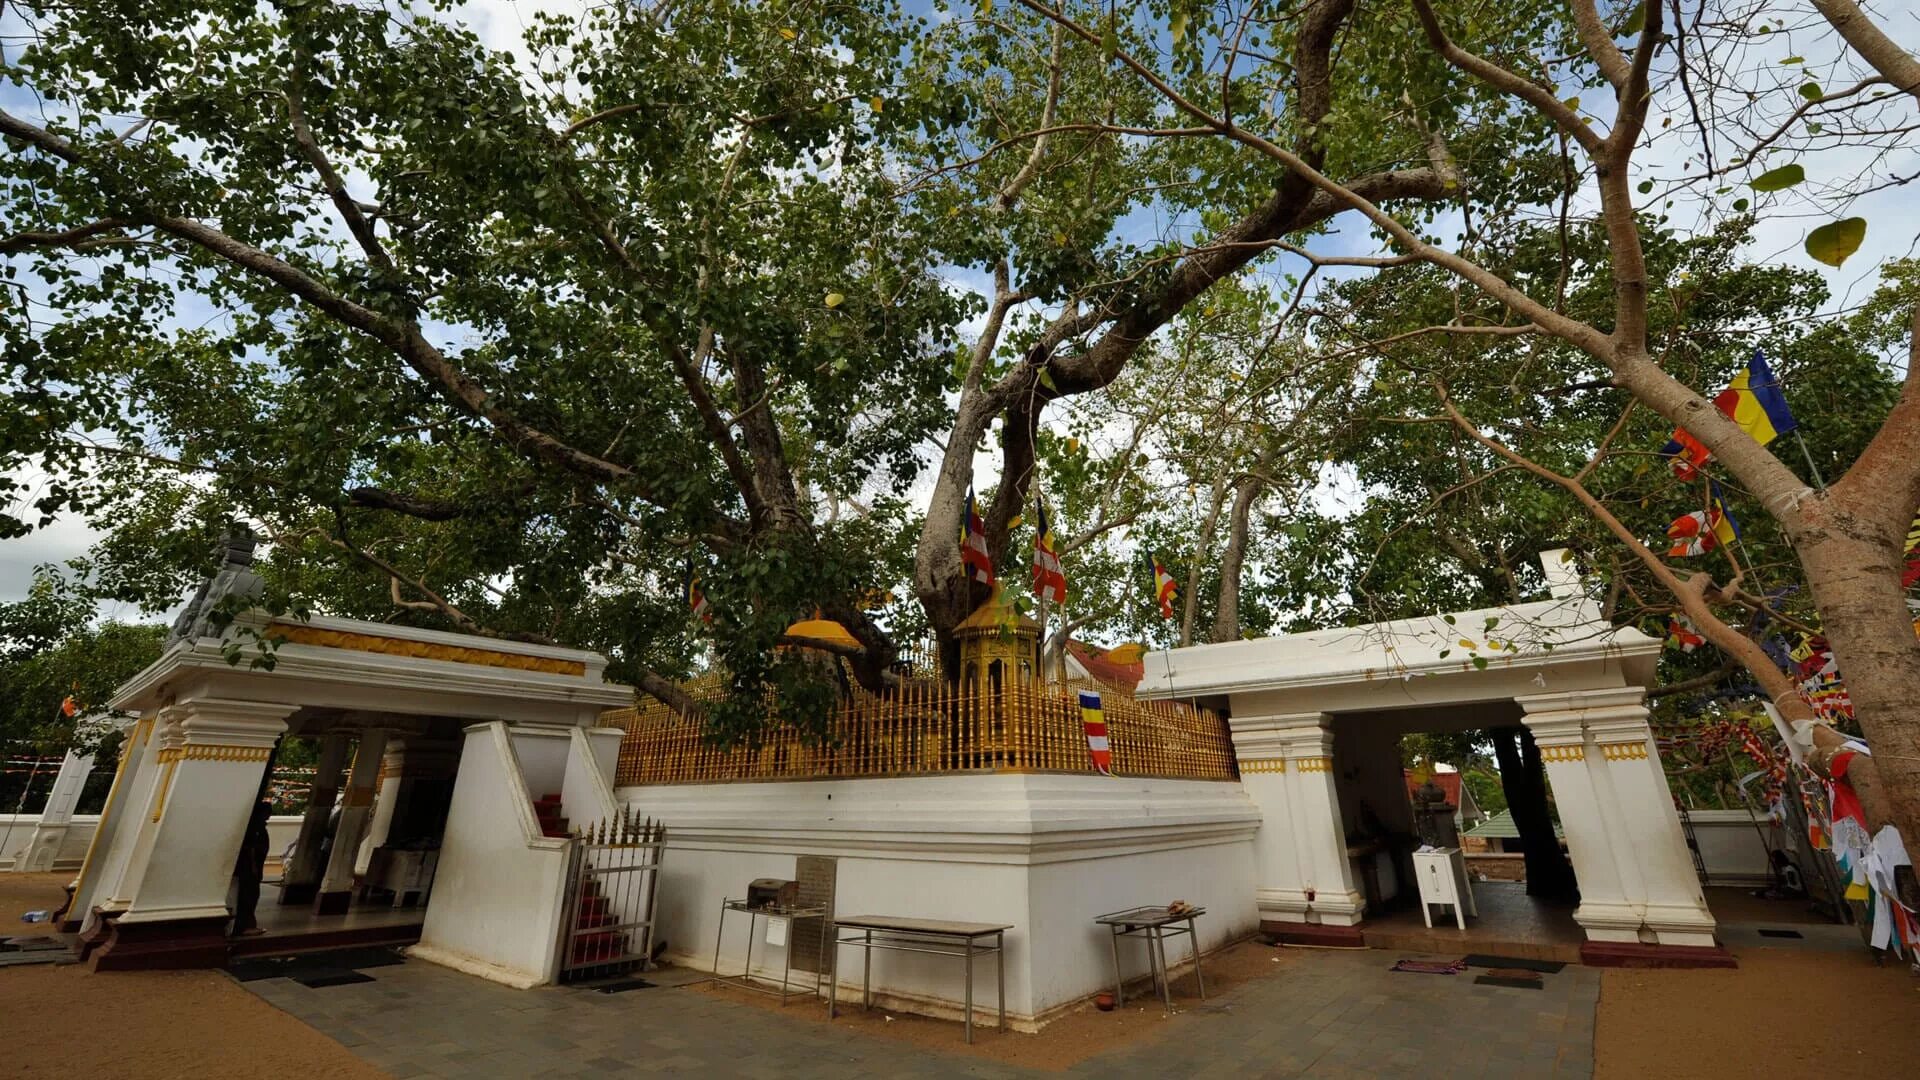 Джайя шри. Анурадхапура Шри Ланка дерево Бодхи. Дерево Бодхи в Анурадхапуре. Дерево Бодхи на Шри Ланке. Дерево Шри Маха Бодхи.